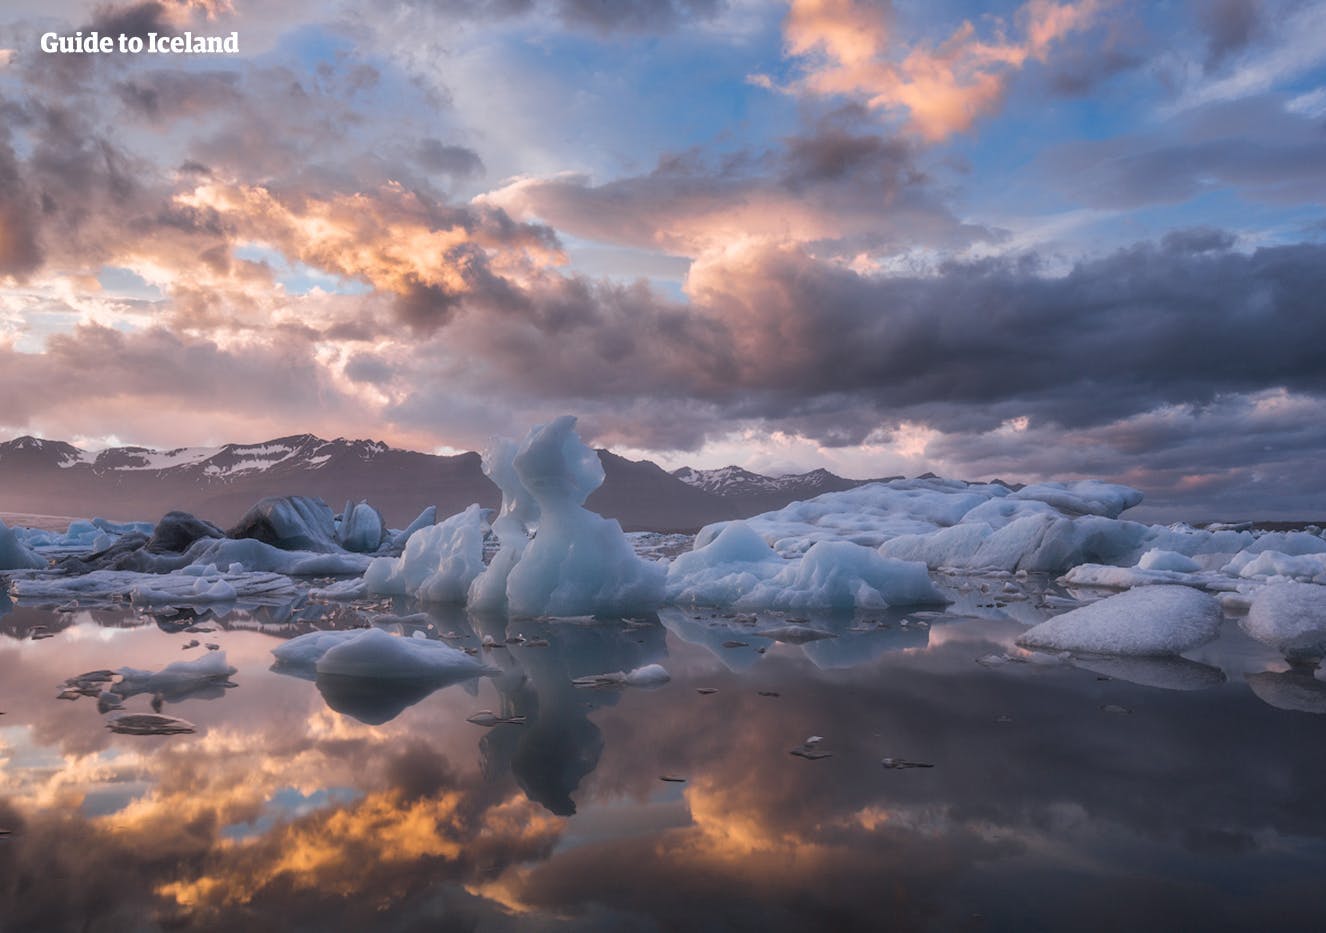 Laguna lodowcowa Jökulsárlón znana jest jako „klejnot koronny Islandii” dzięki swojej oszałamiającej, eterycznej estetyce.